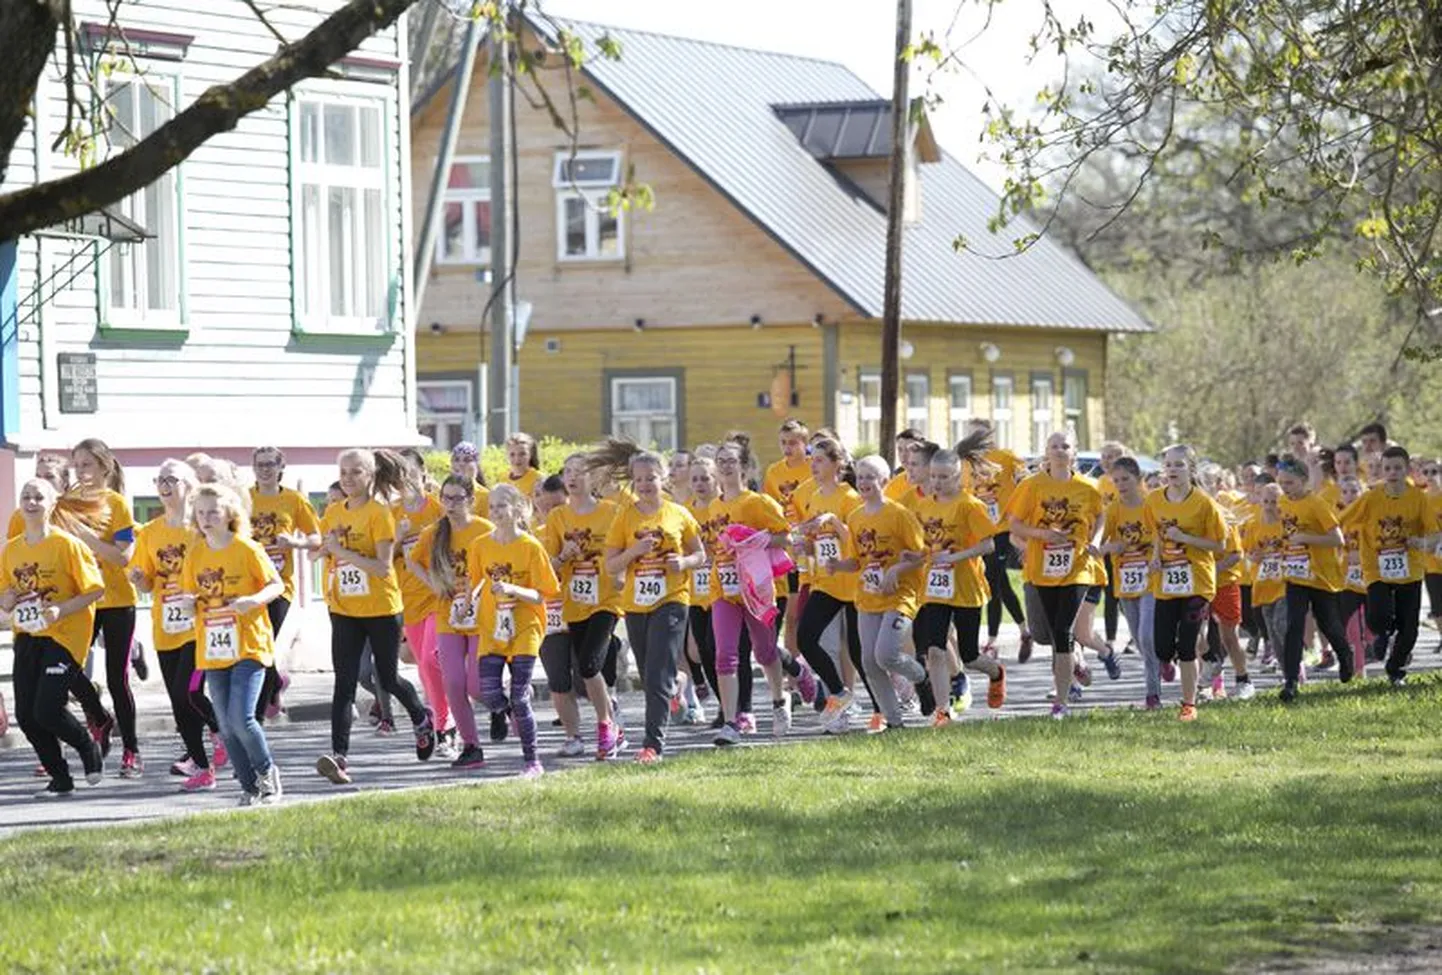 Täna toimus 21 Eesti linnas juba üheteistkümnendat korda heategevuslik teatejooks, millest võttis osa rekordiliselt üle 9500 lapse.